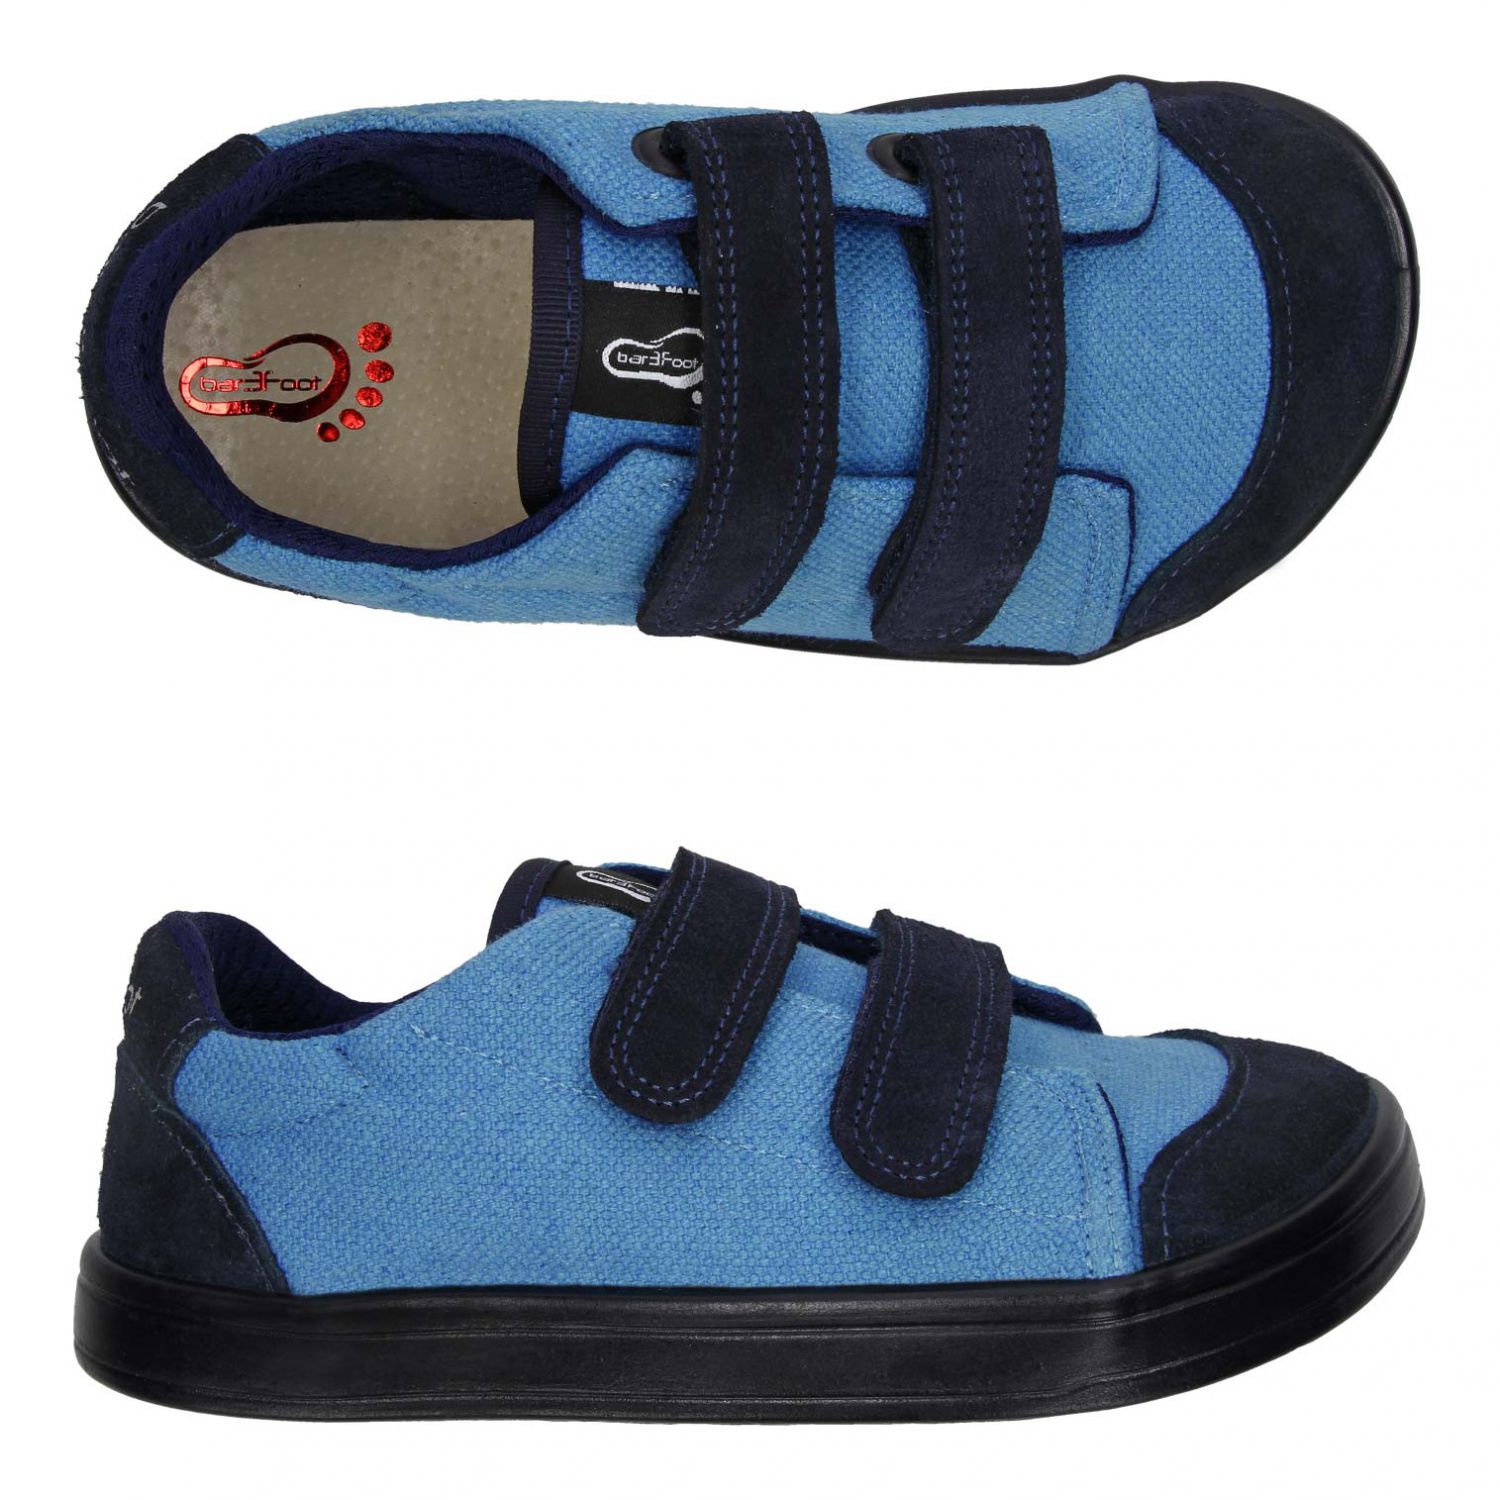 3F Bar3foot tekstiilist tossud- Turquoise Laste barefoot jalatsid - HellyK - Kvaliteetsed lasteriided, villariided, barefoot jalatsid